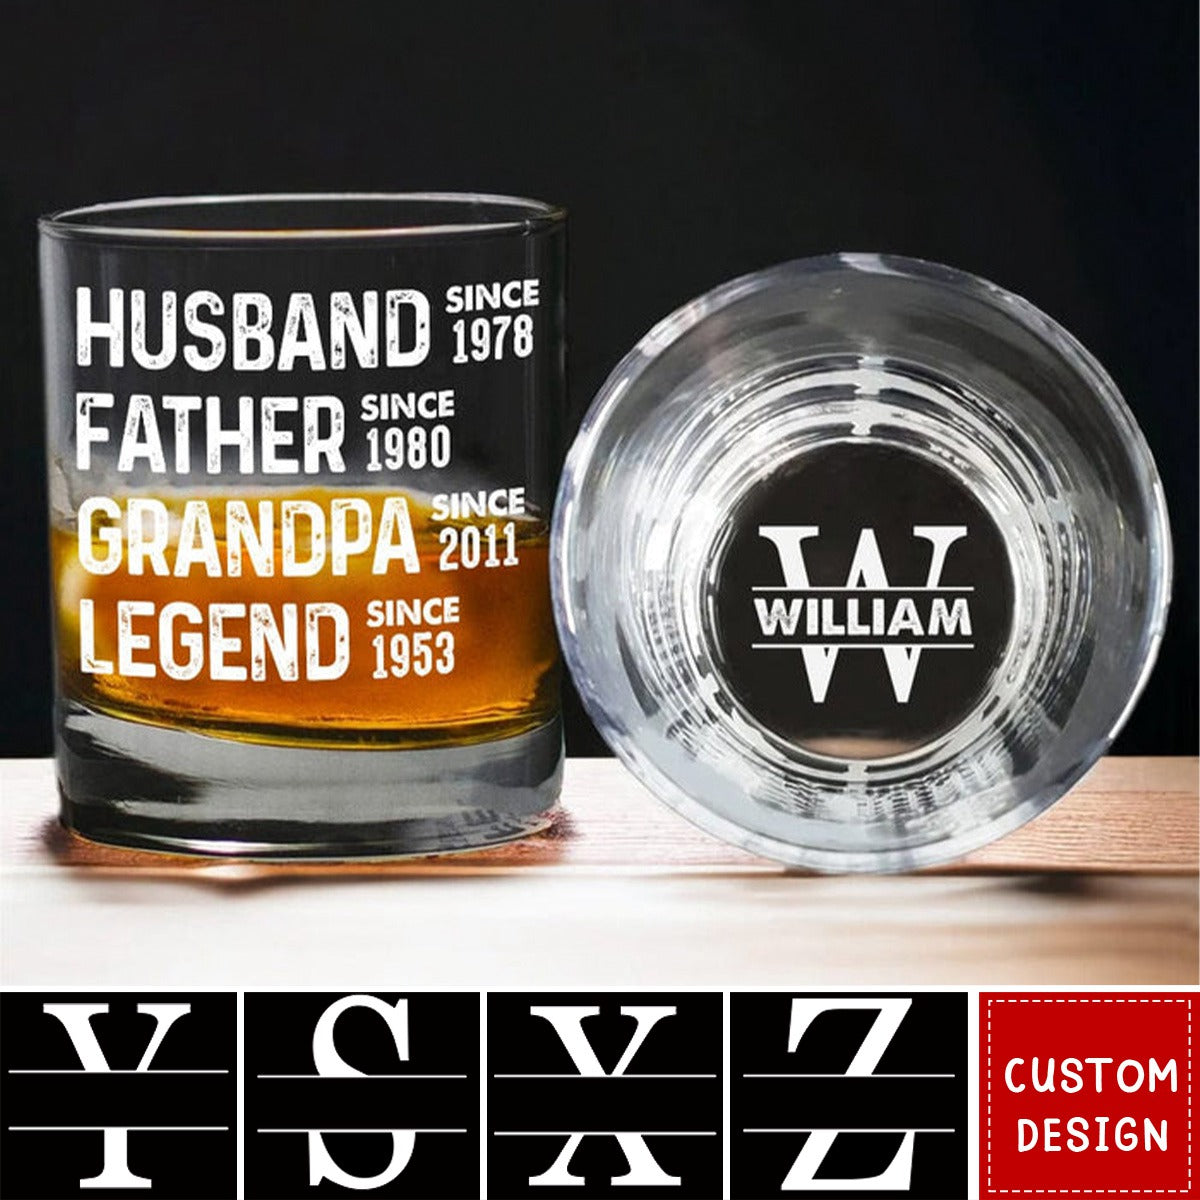 Husband Father Grandpa Legend- Personalized Whiskey Glass